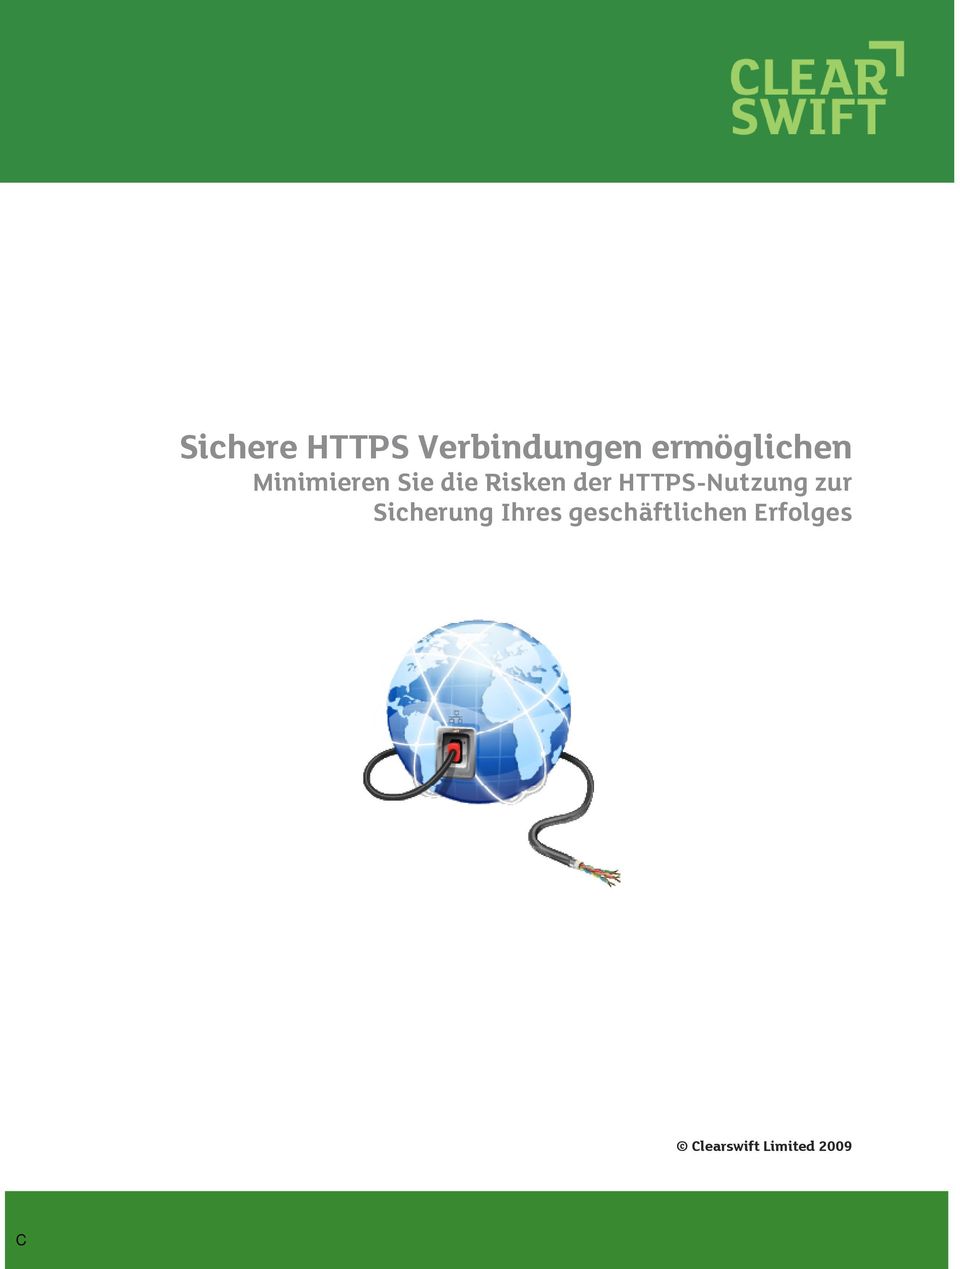 der HTTPS-Nutzung zur Sicherung Ihres